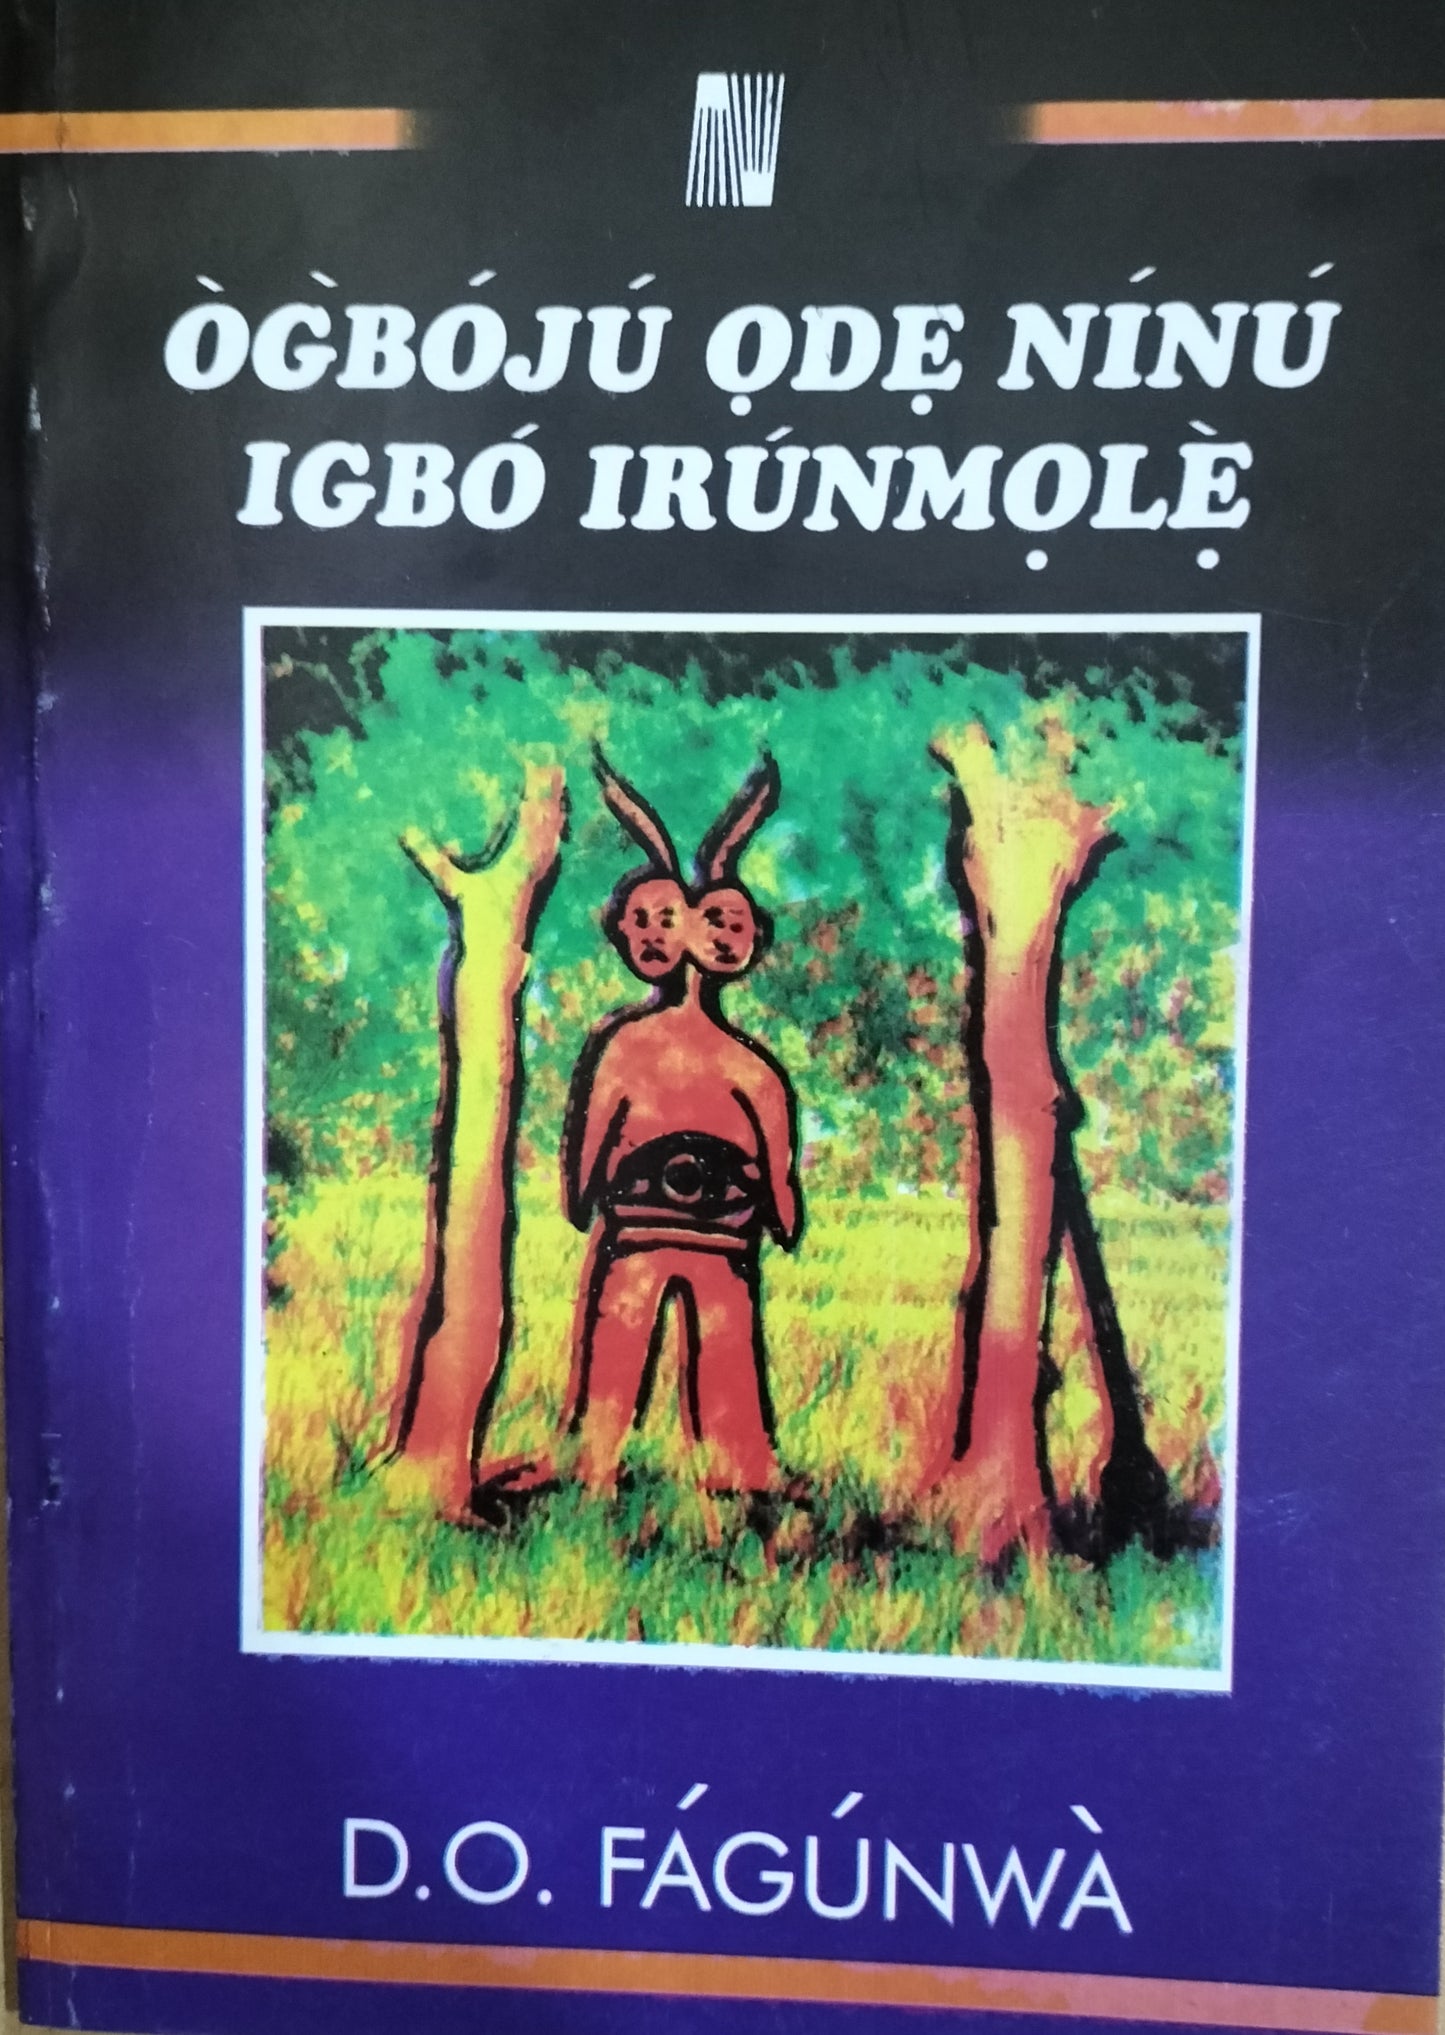 Ogboju Ode Ninu Igbo Irunmole by D. O. Fagunwa